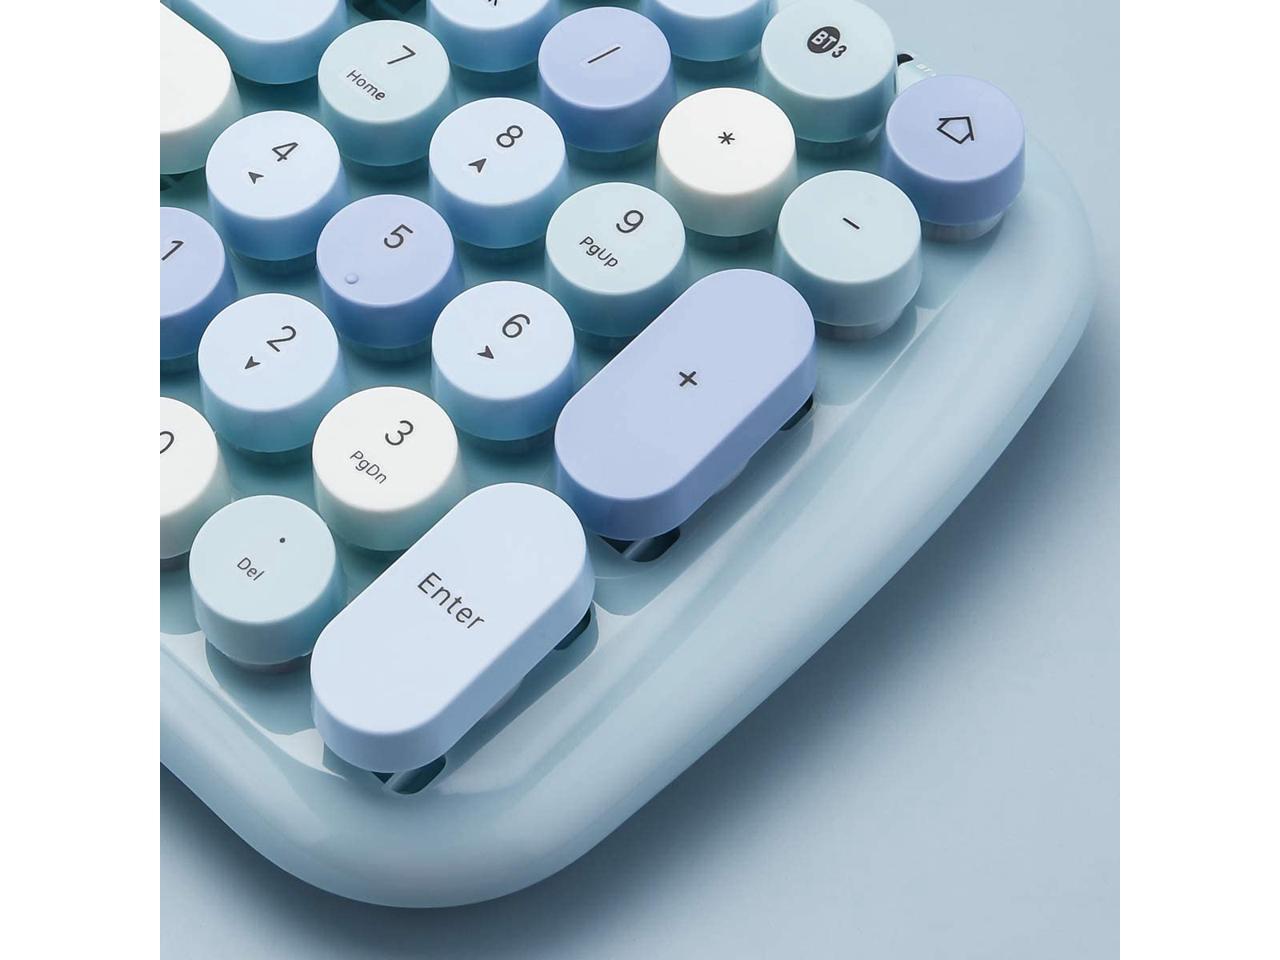 typewriter keyboard bluetooth